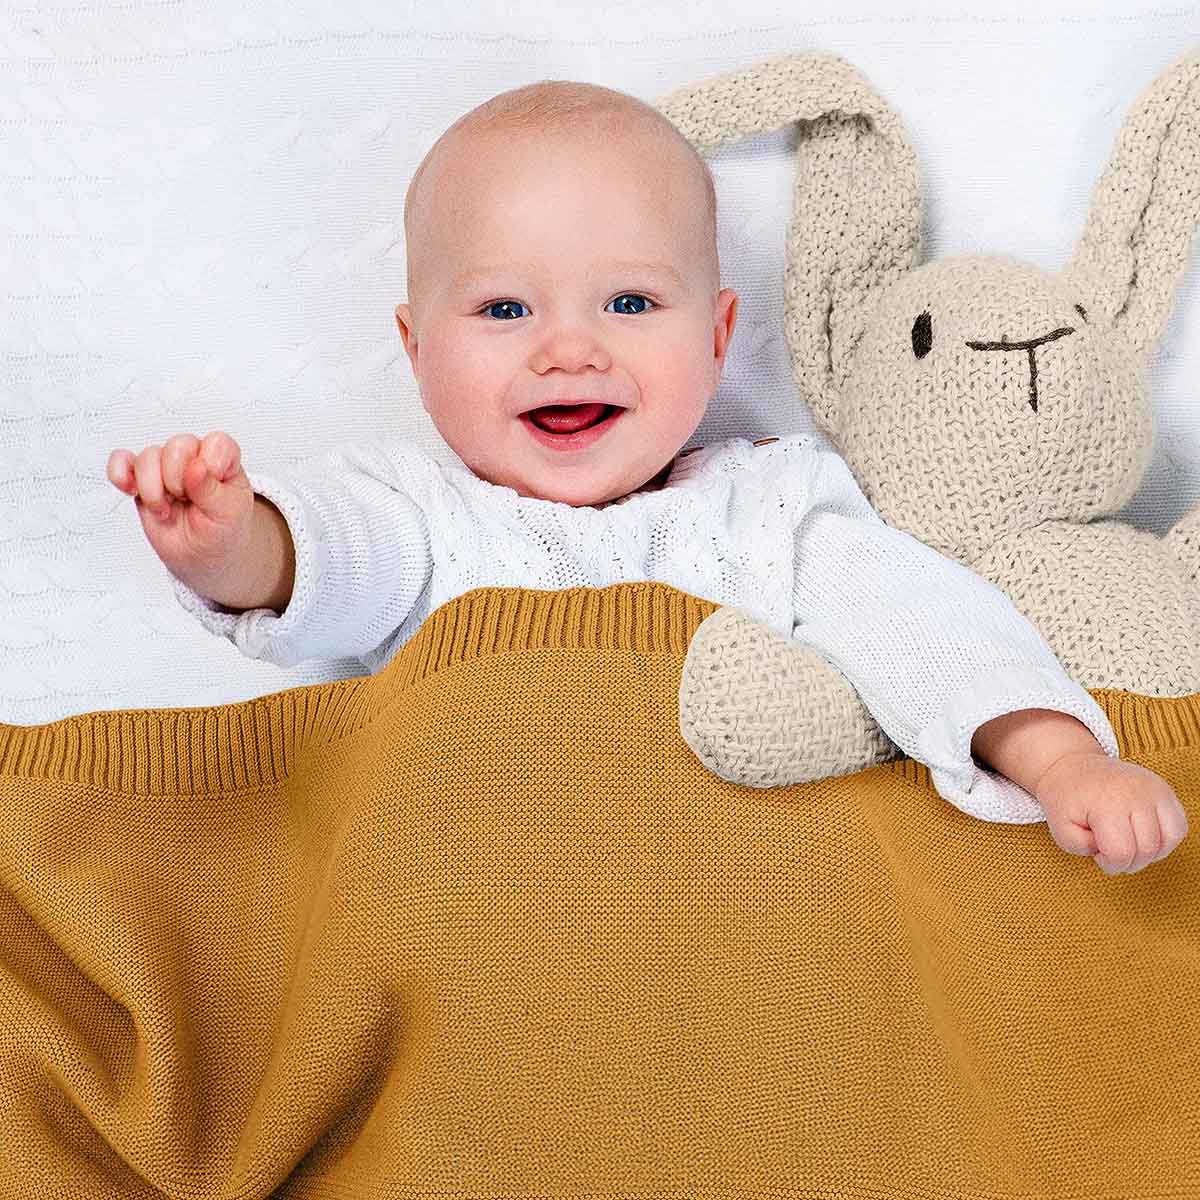 Glückliches Baby liegt im Bett, eingedeckt in dunkel-gelbe Bio-Baumwolldecke. Es lächelt und winkt in die Kamera.